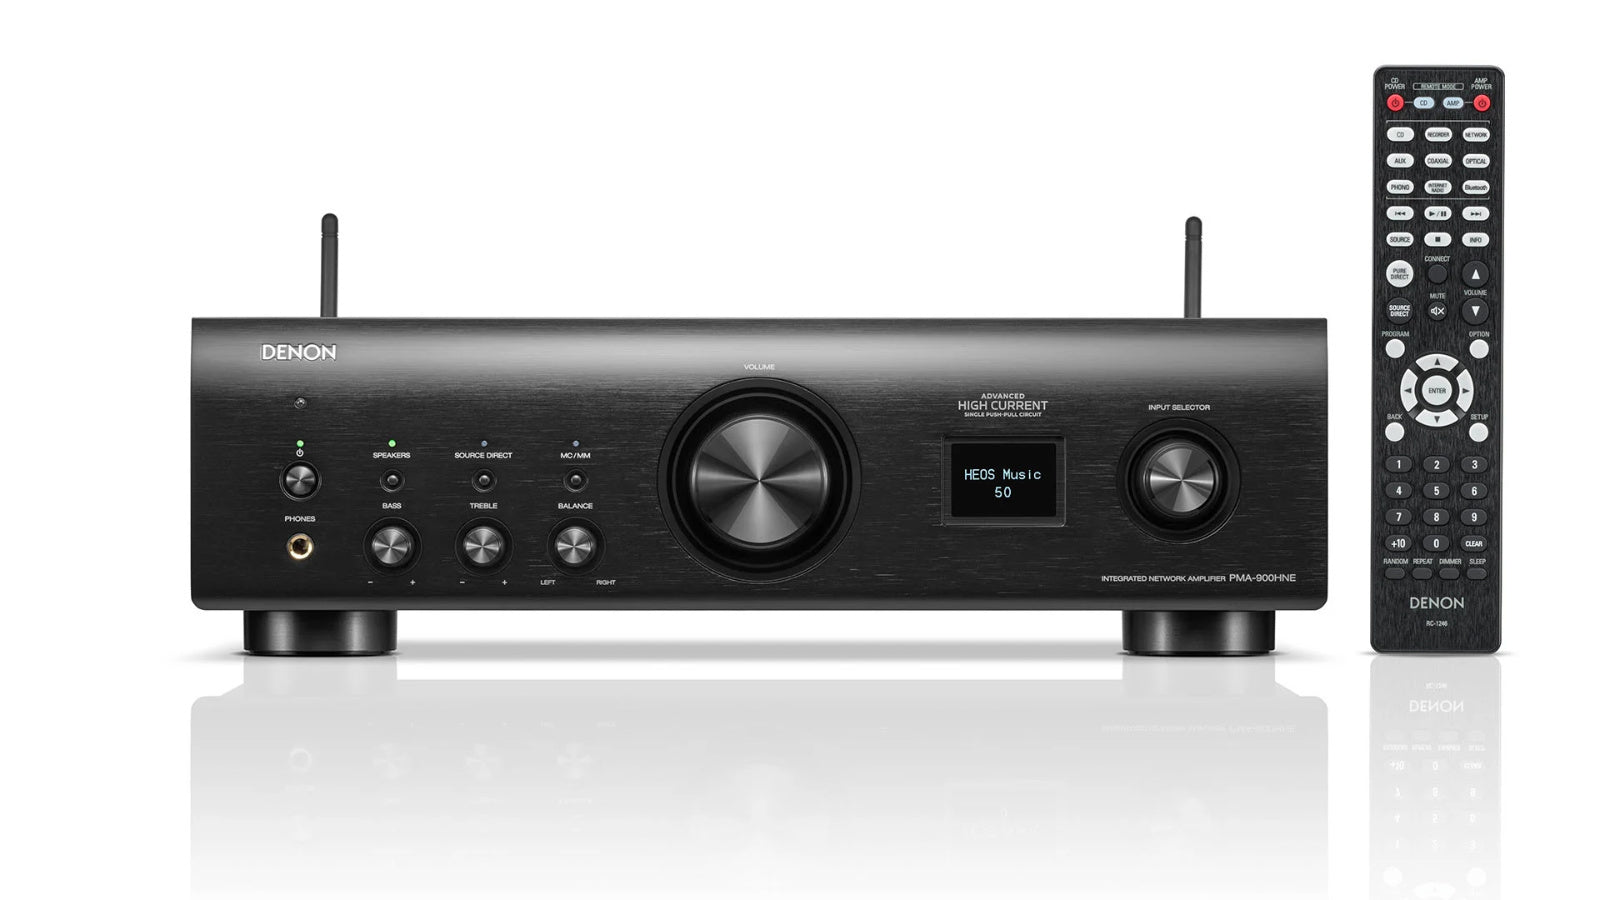 Denon PMA-900HNE stereo amplifier